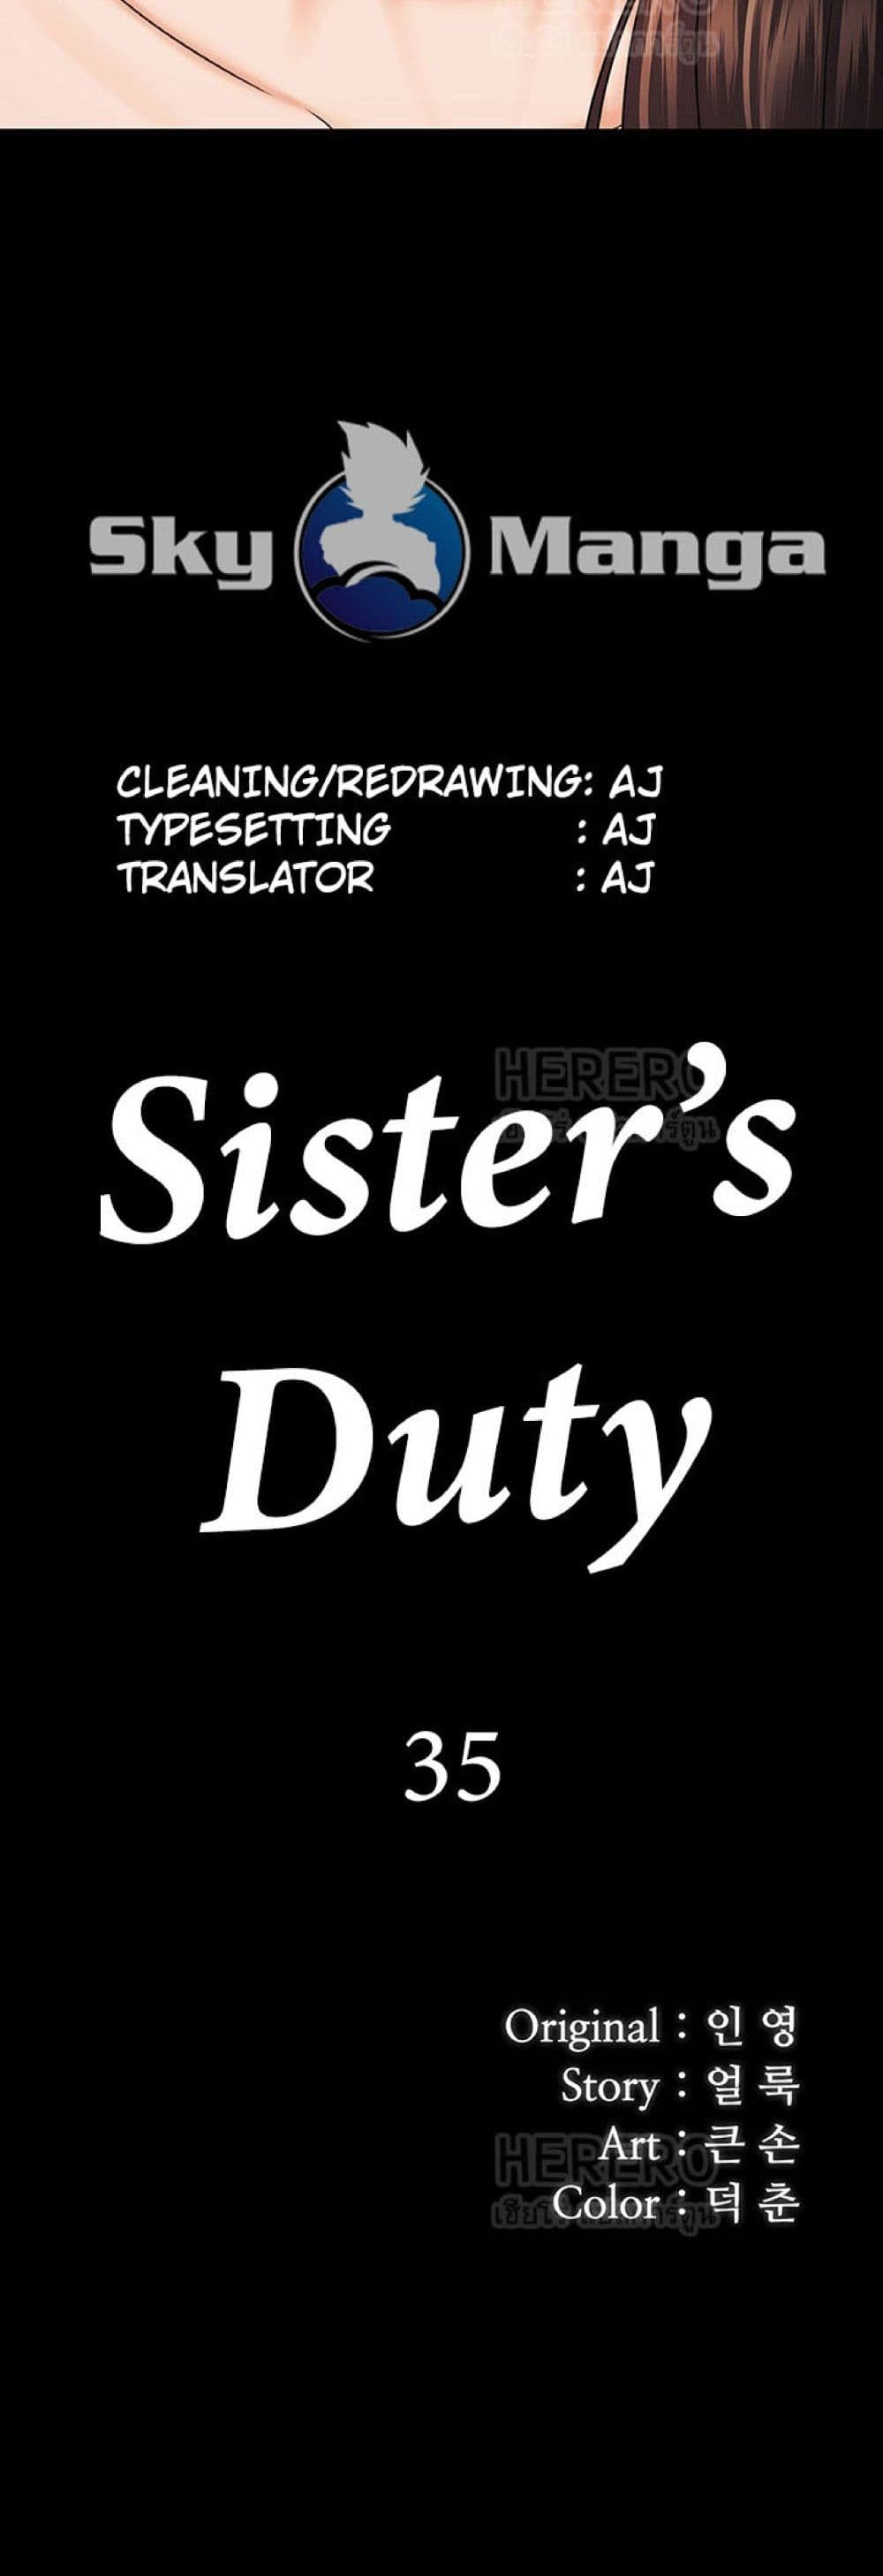 Sister's Duty 35 (5)